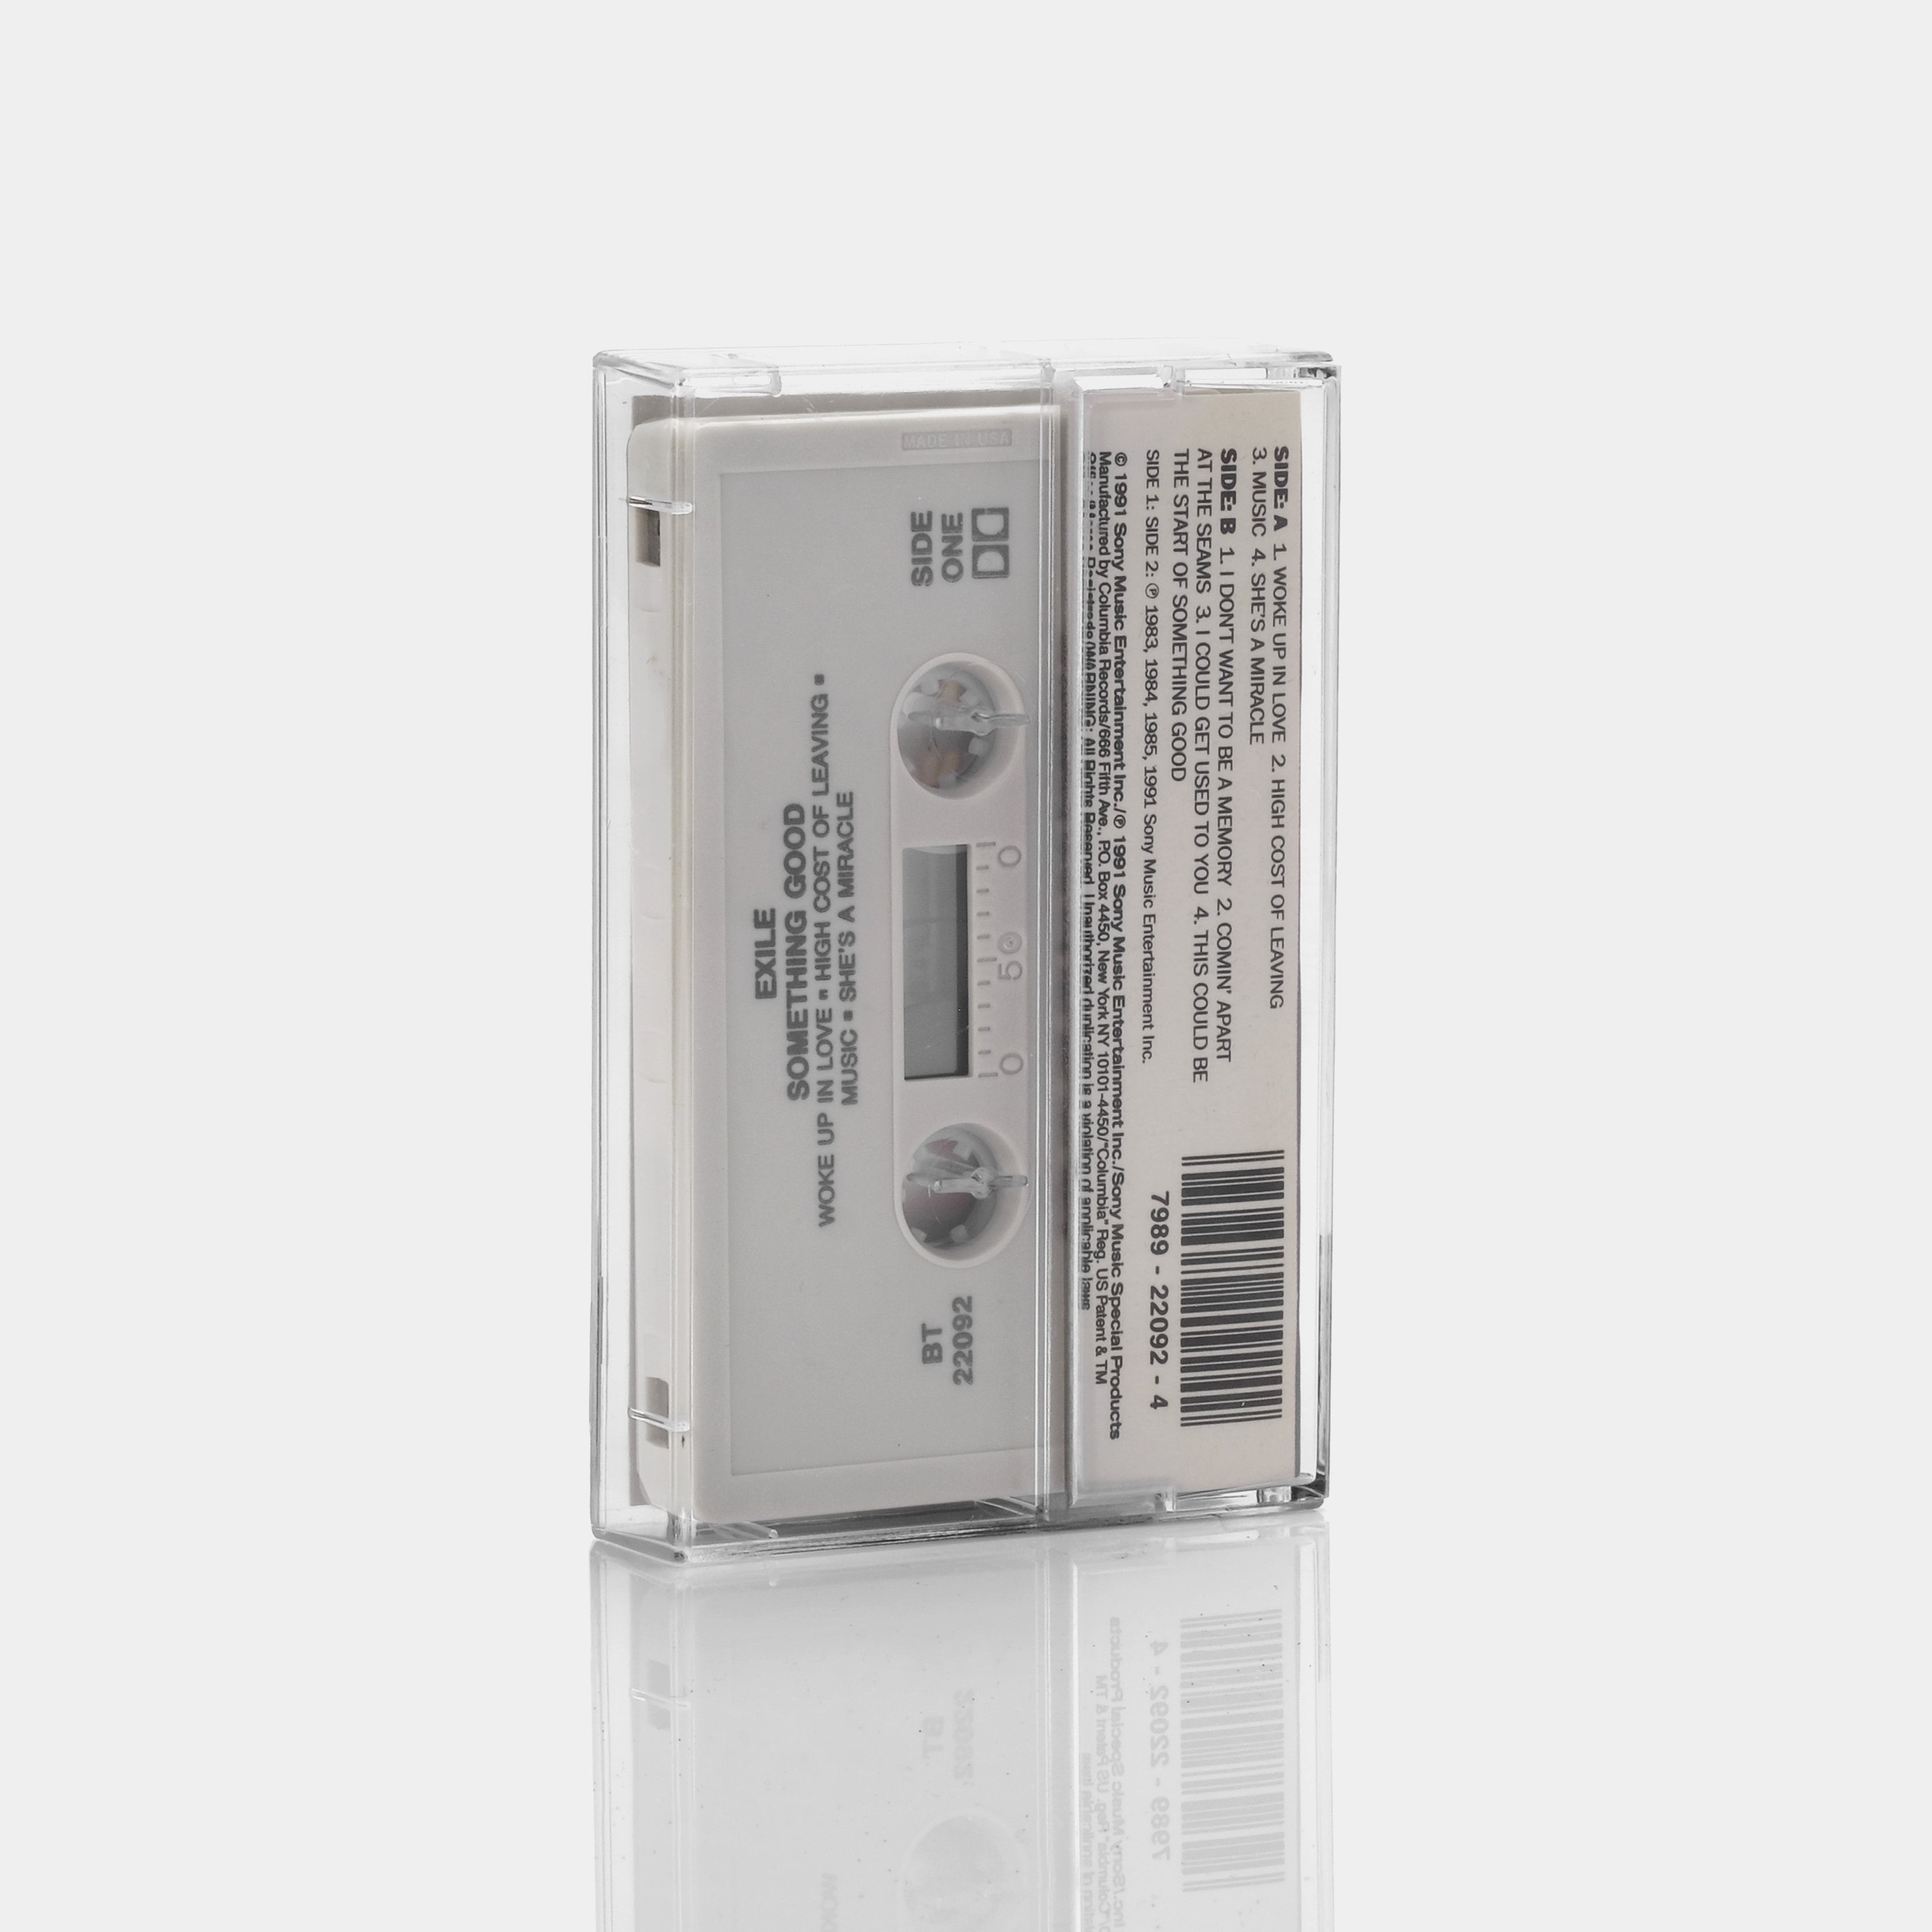 Exile - Something Good Cassette Tape